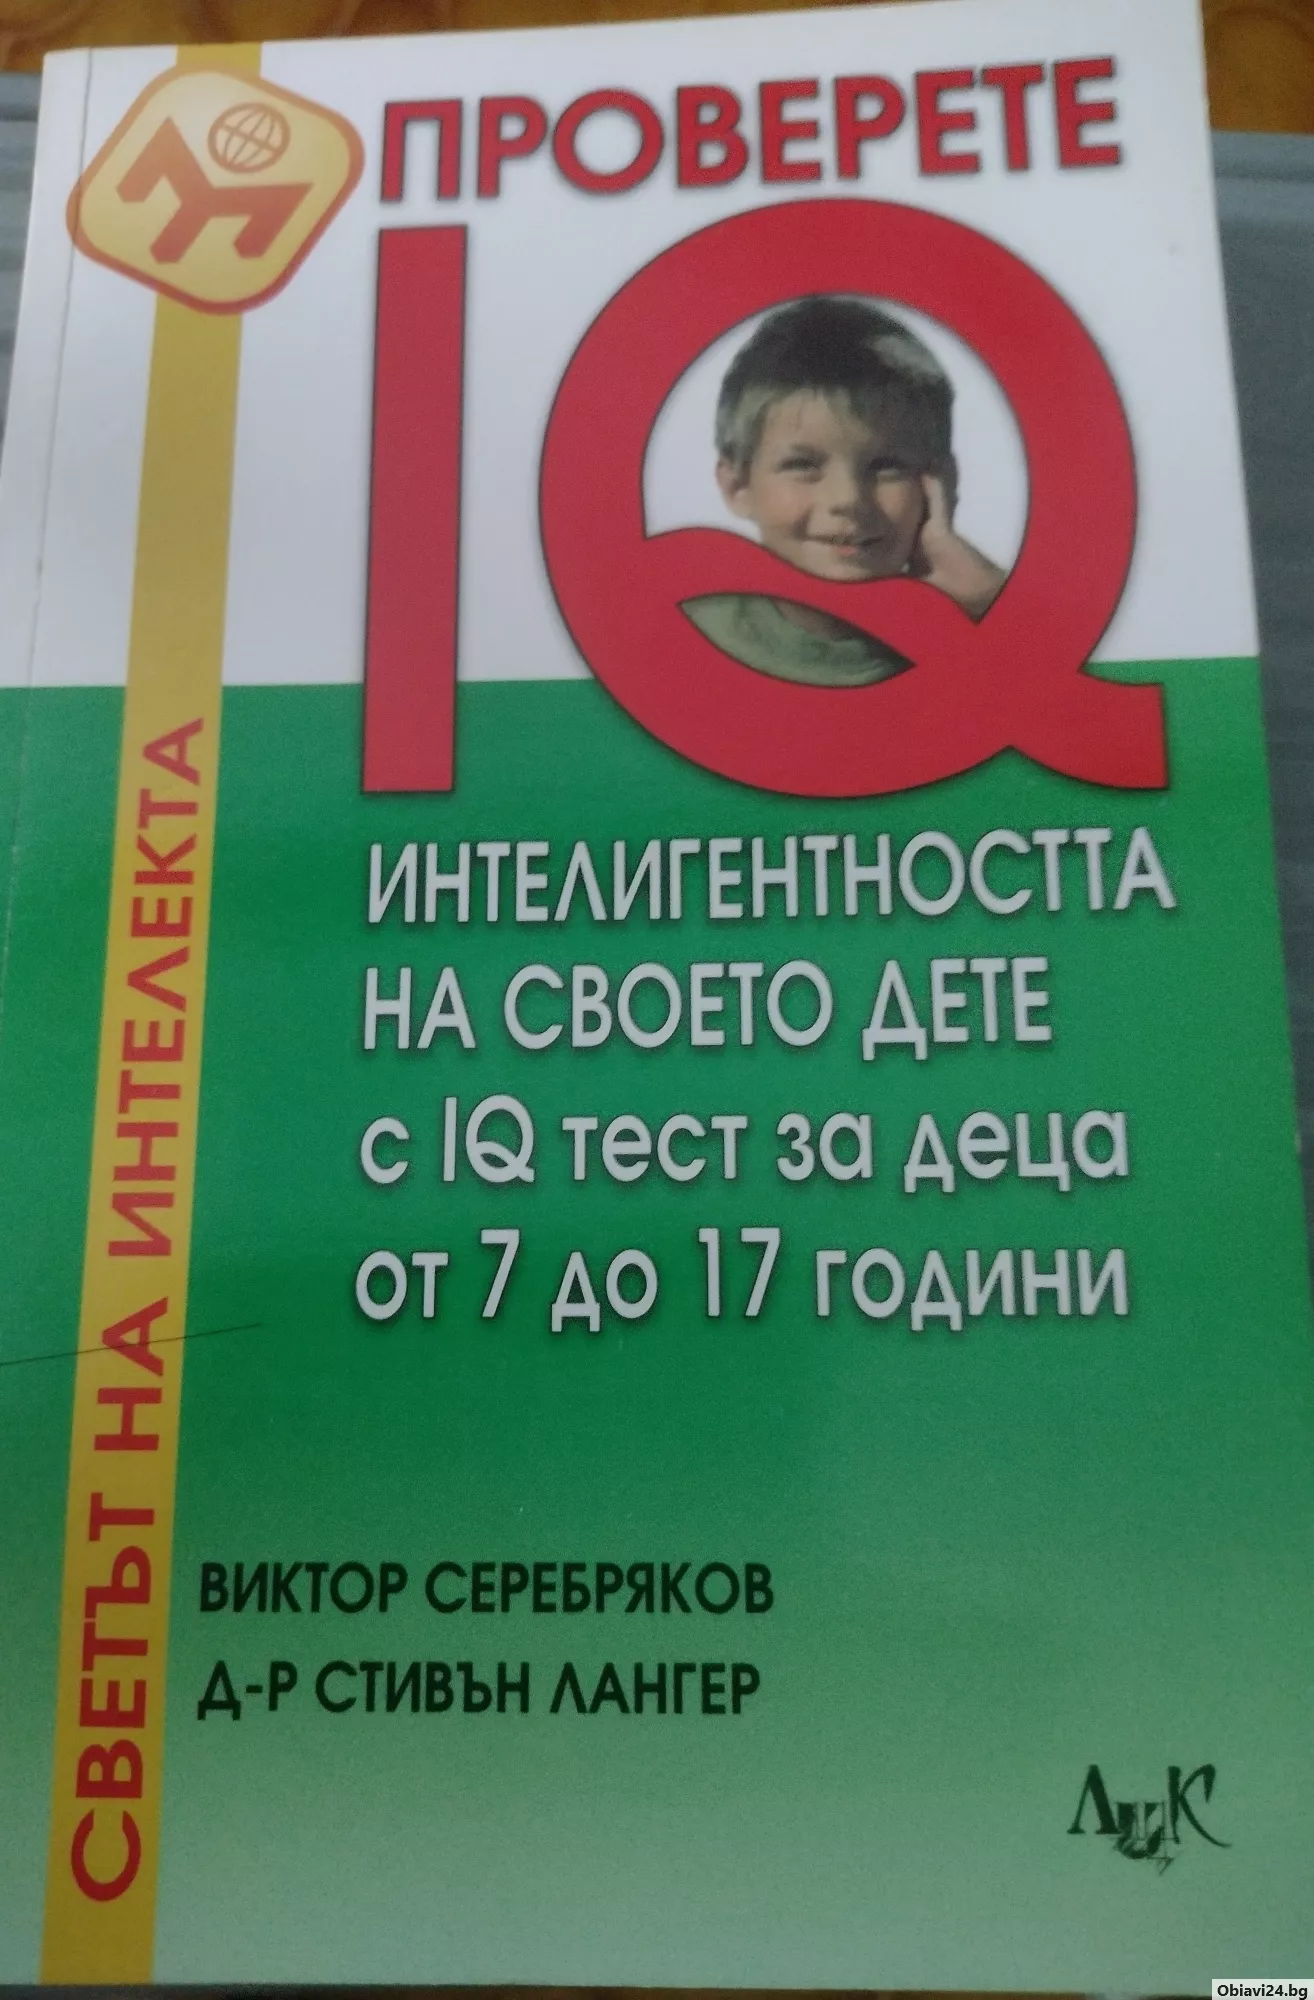 Проверете интелигентността на своето дете - obiavi24.bg